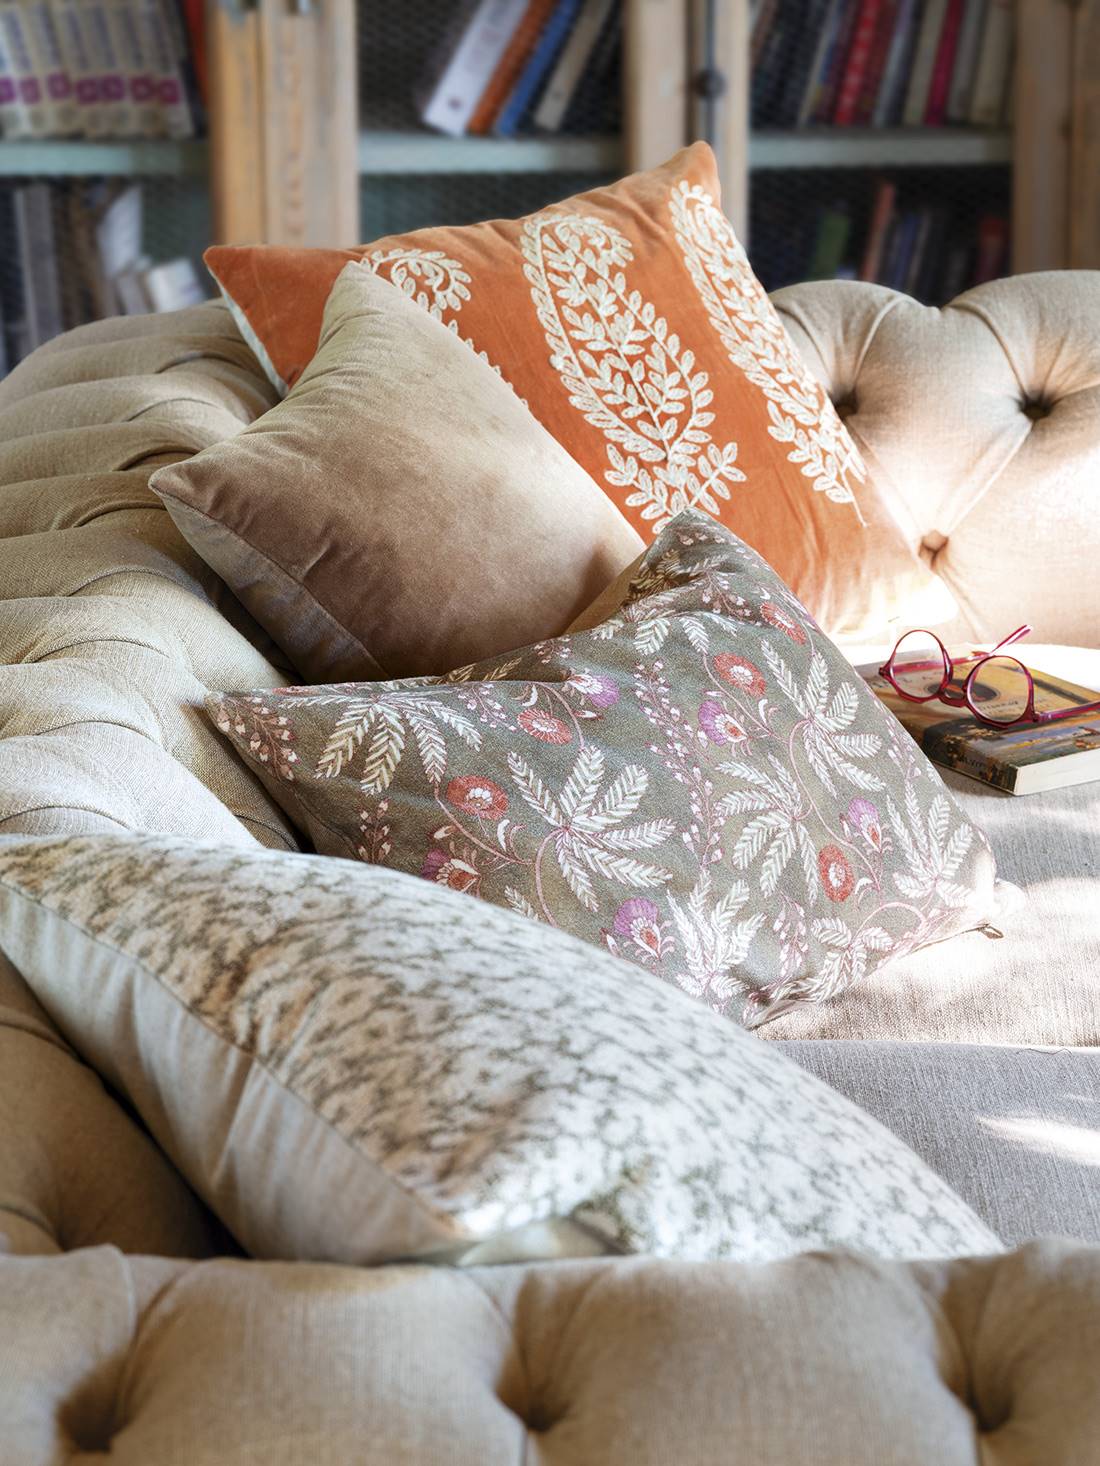 Sofá con cojines de estampado floral, de terciopelo y colores cálidos otoñales.